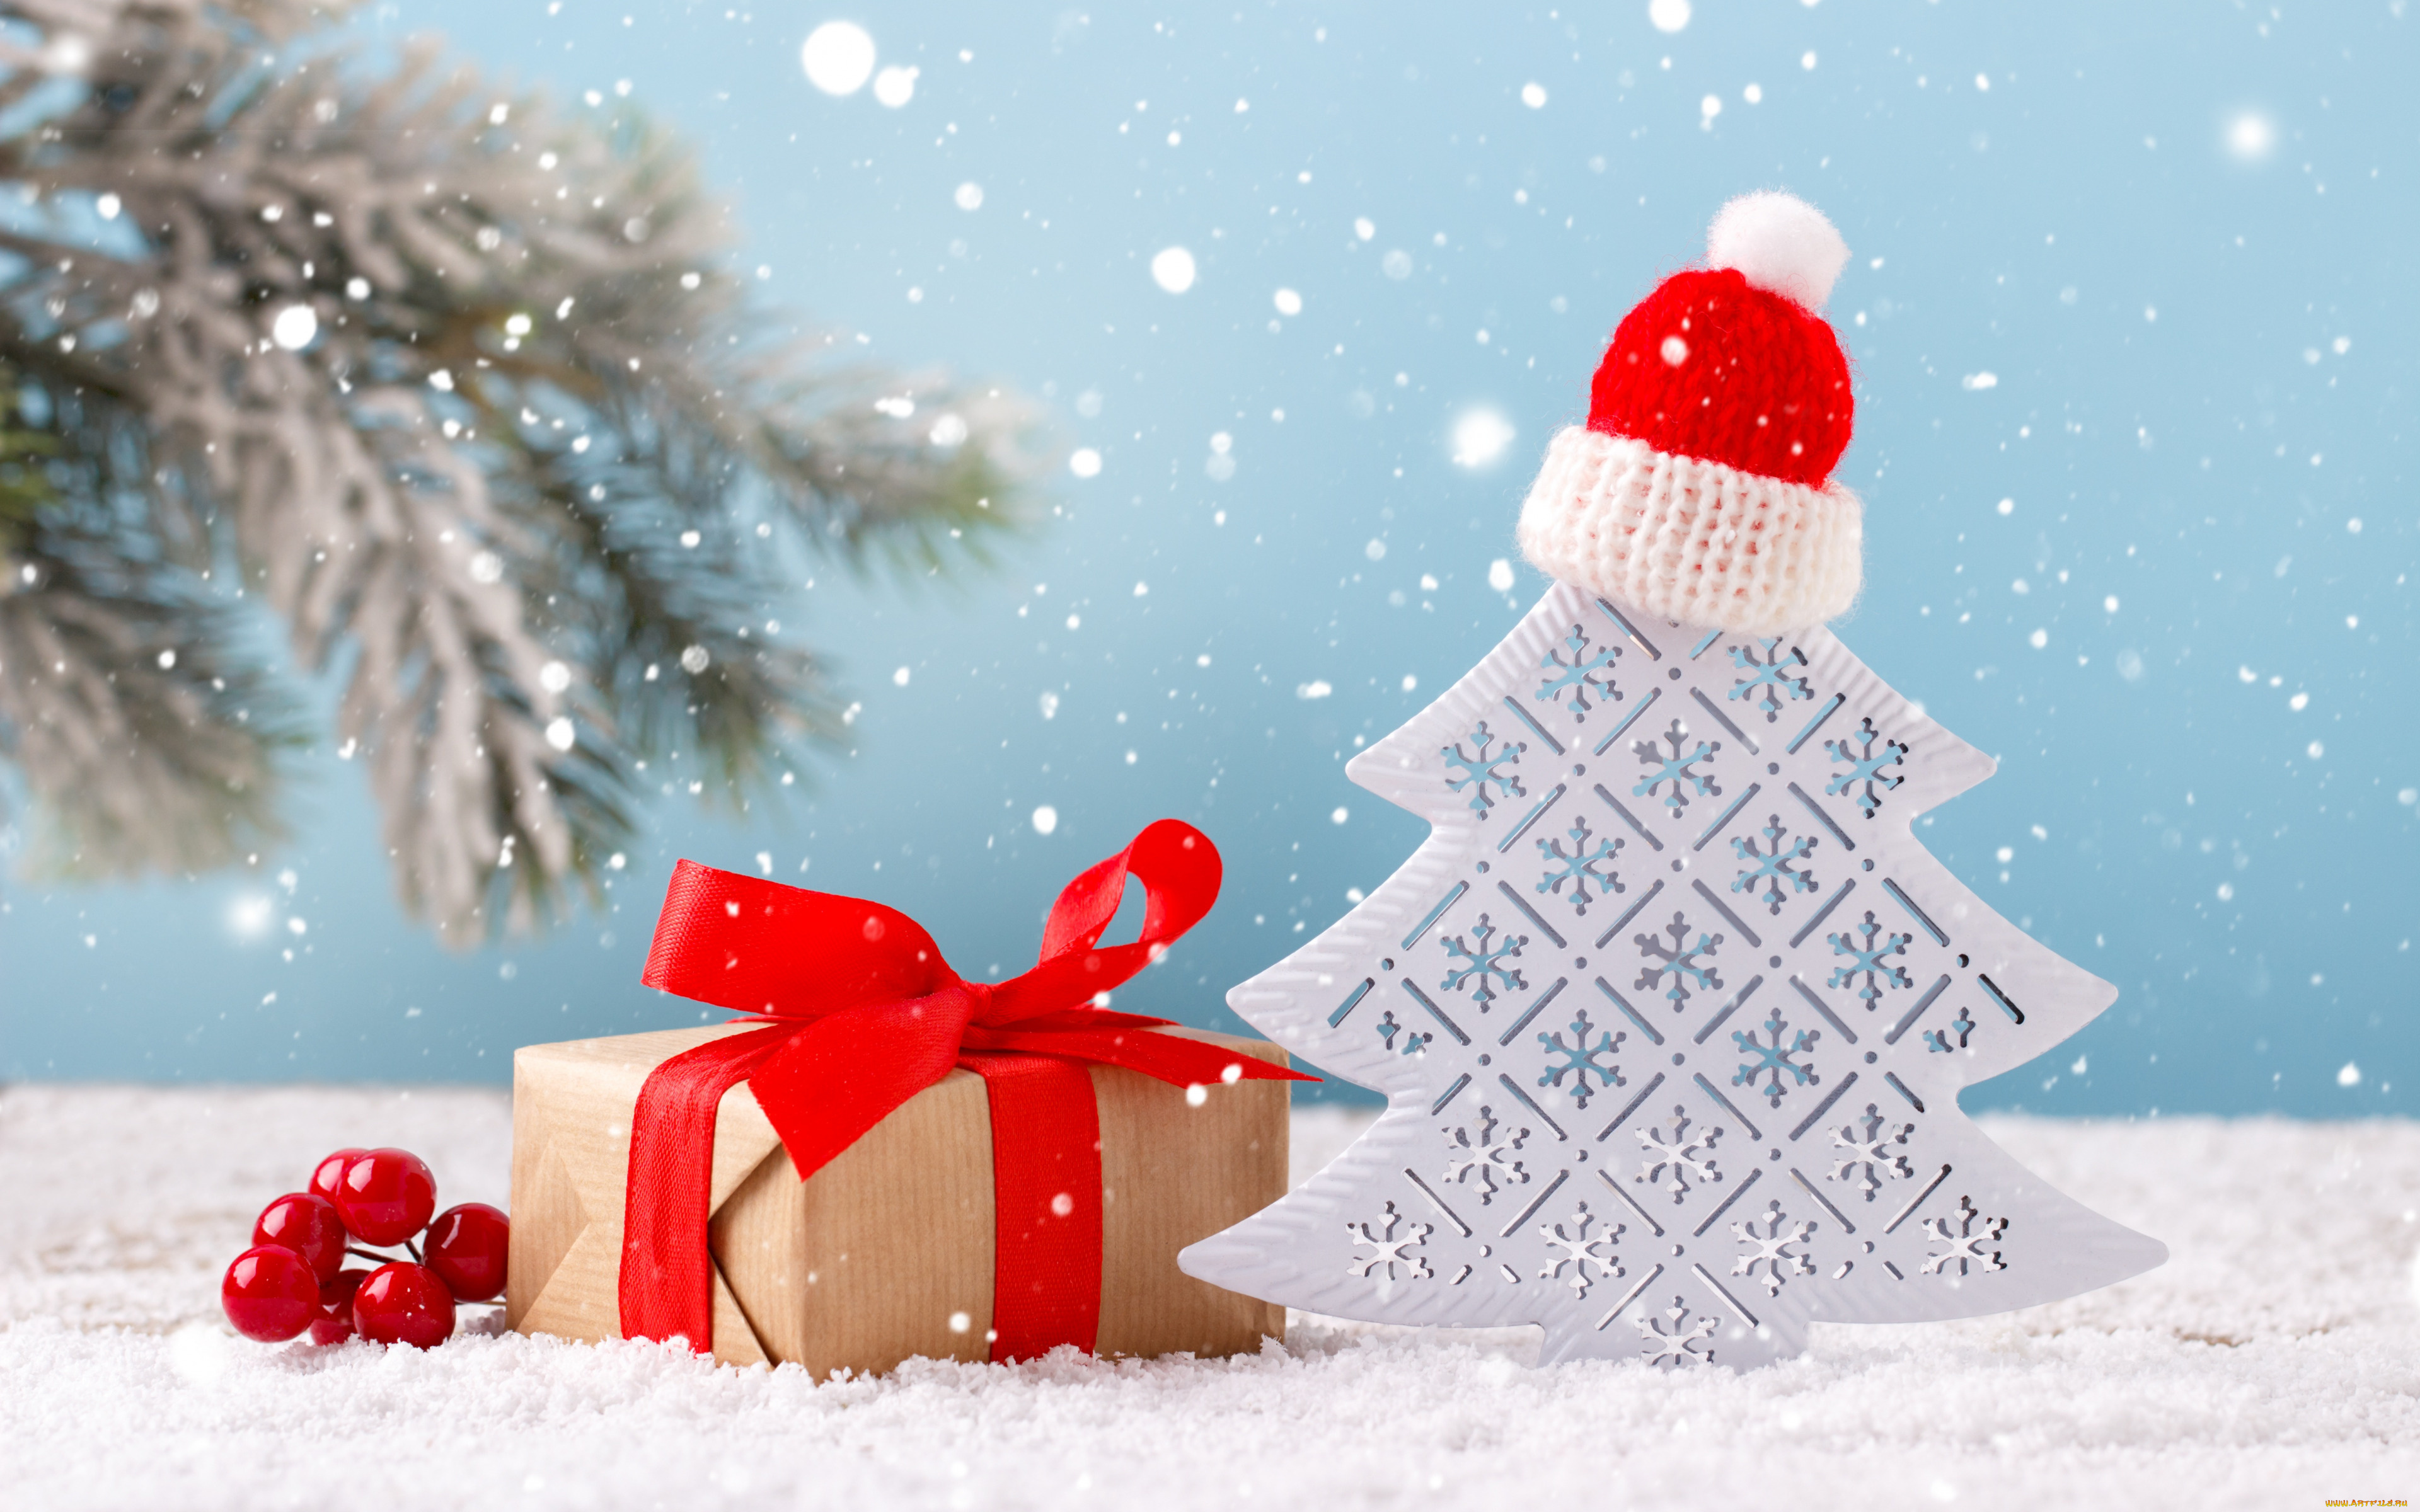 праздничные, подарки, и, коробочки, белый, деревянное, дерево, подарочная, коробка, новогоднее, украшение, c, новым, годом, рождество, снег, с, рождеством